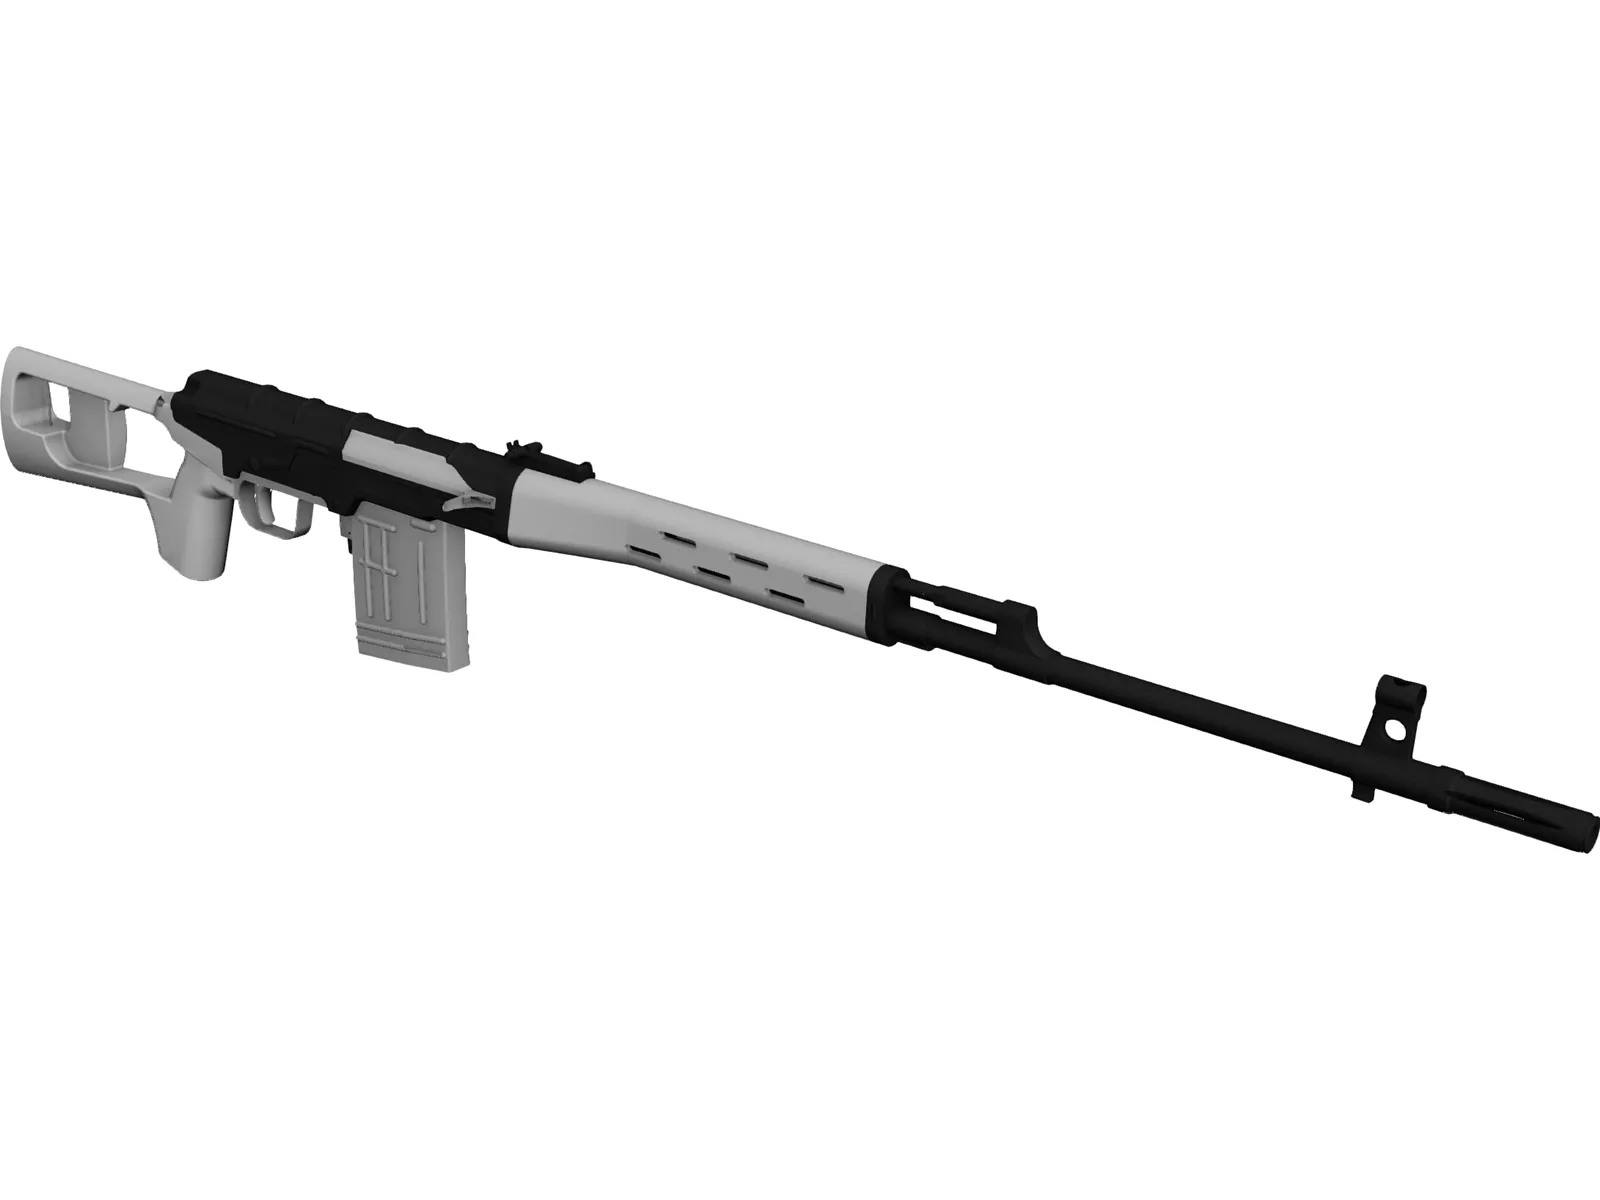 SVD Dragunov Sniper Rifle 3D Model